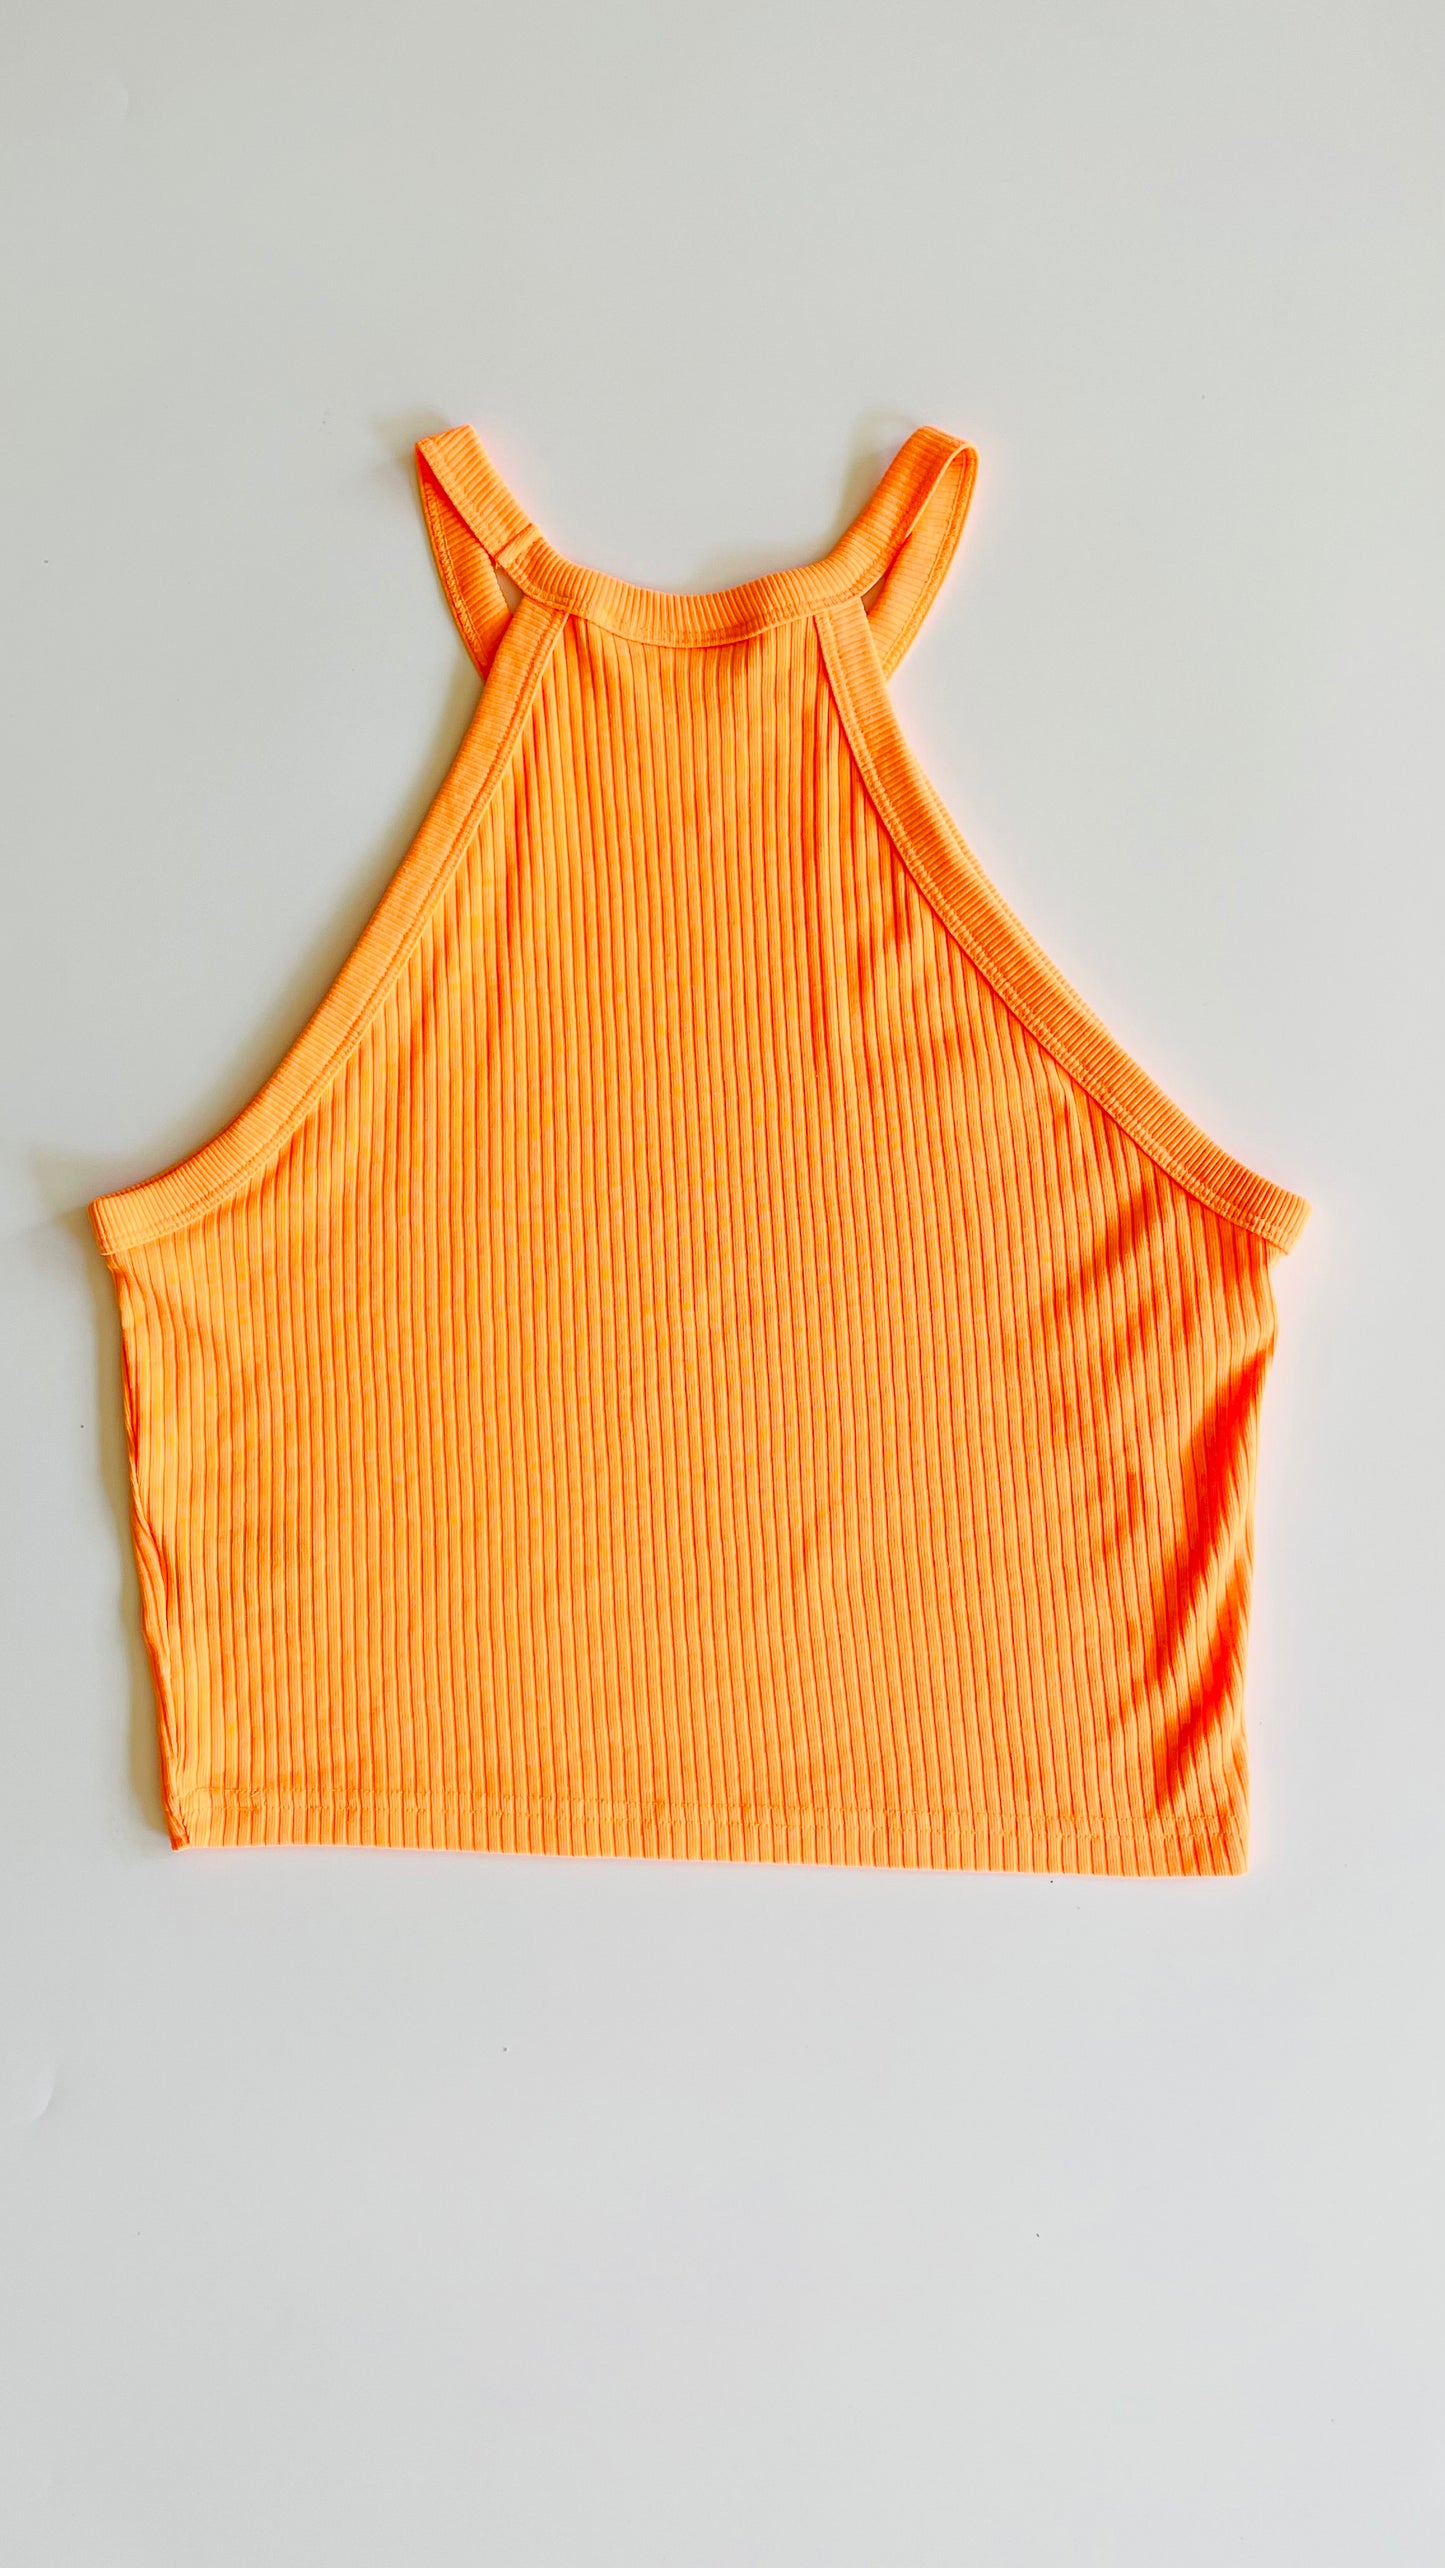 Pre-Loved neon orange knit halter top - Size L